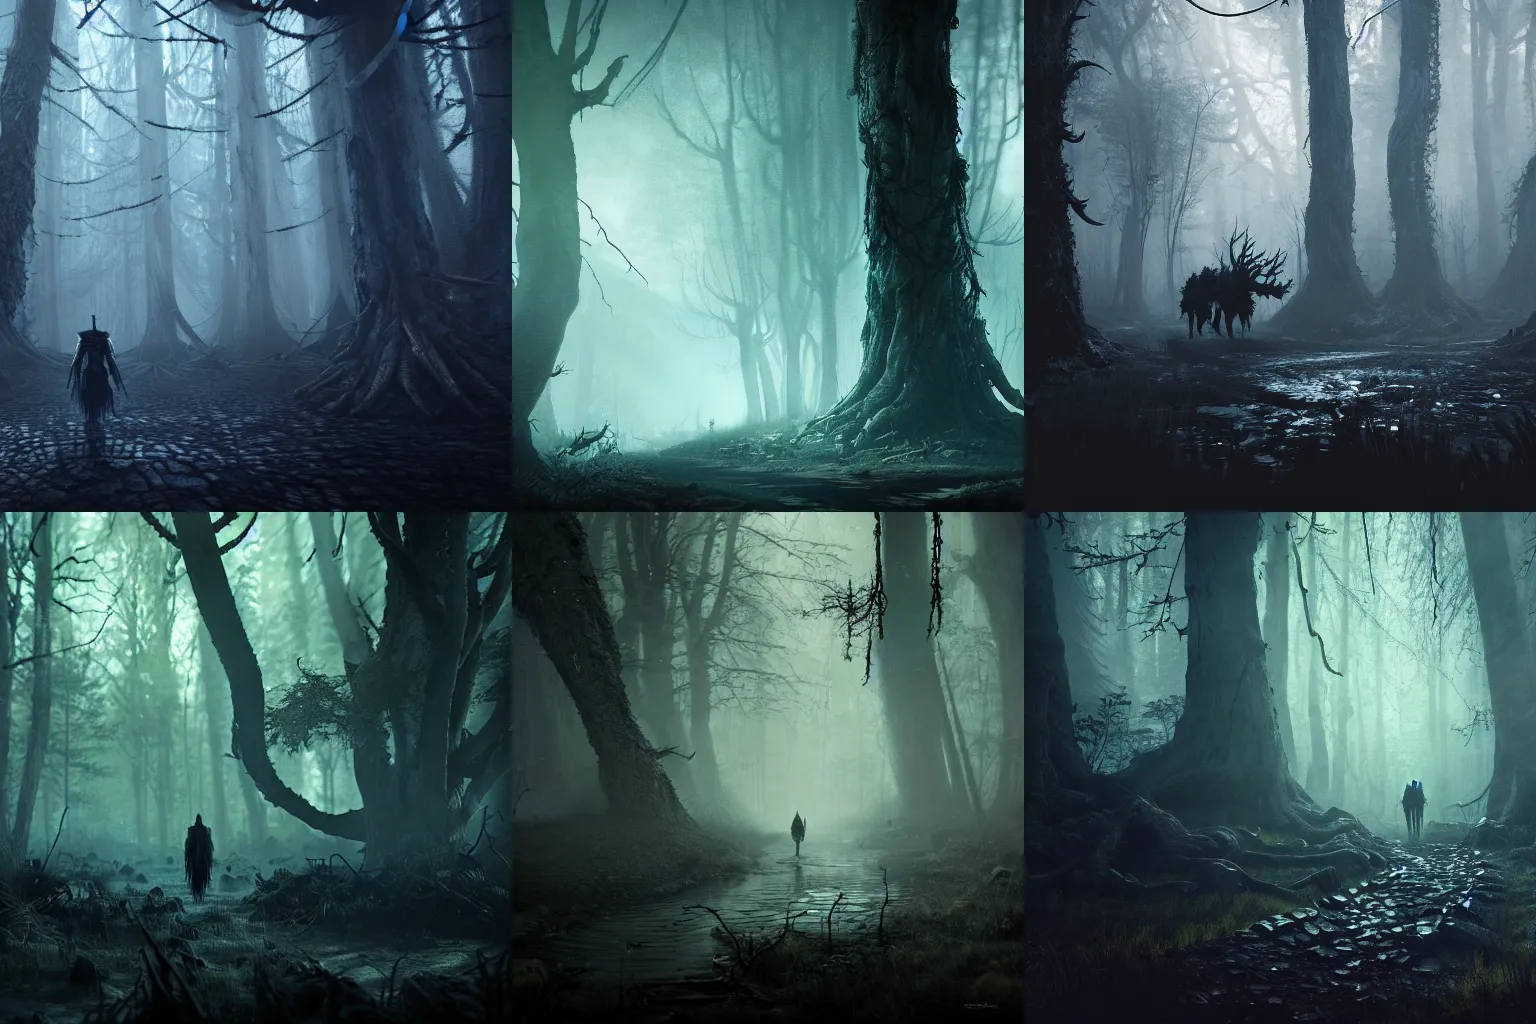 Prompt: dark monster in a creepy dark forest, witcher, haunted, eerie, Wadim Kashin, featured in artstation, octane render, cinematic, elegant, intricate, 8k